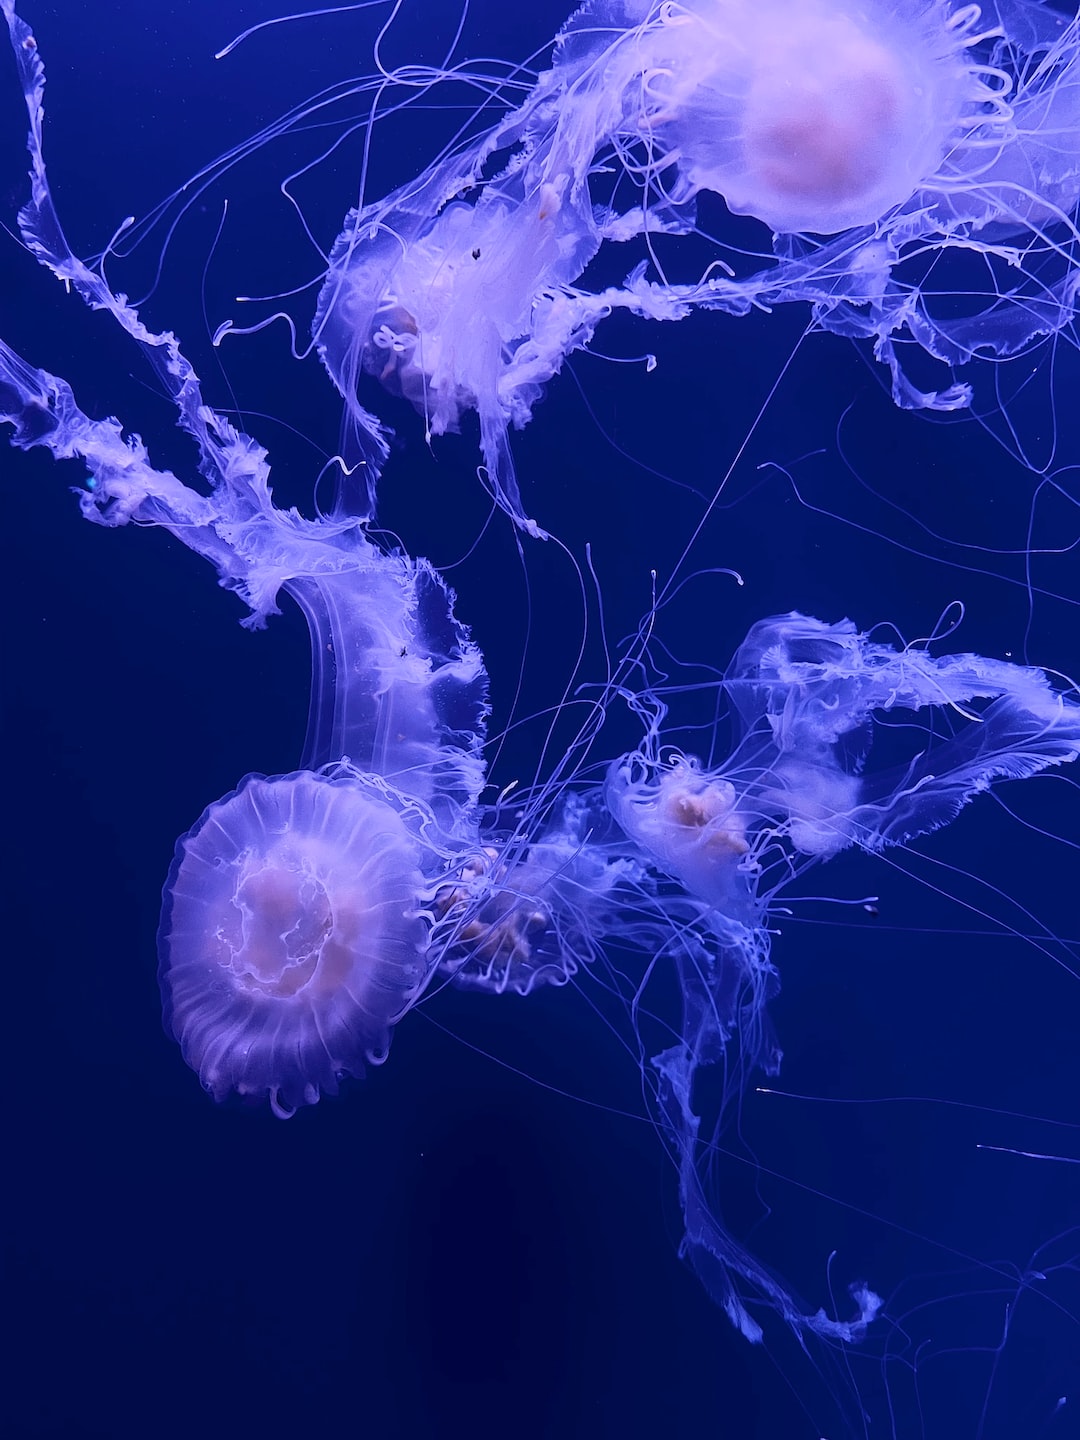 25 wichtige Fragen zu Was Zieht Schnecken Im Aquarium An?